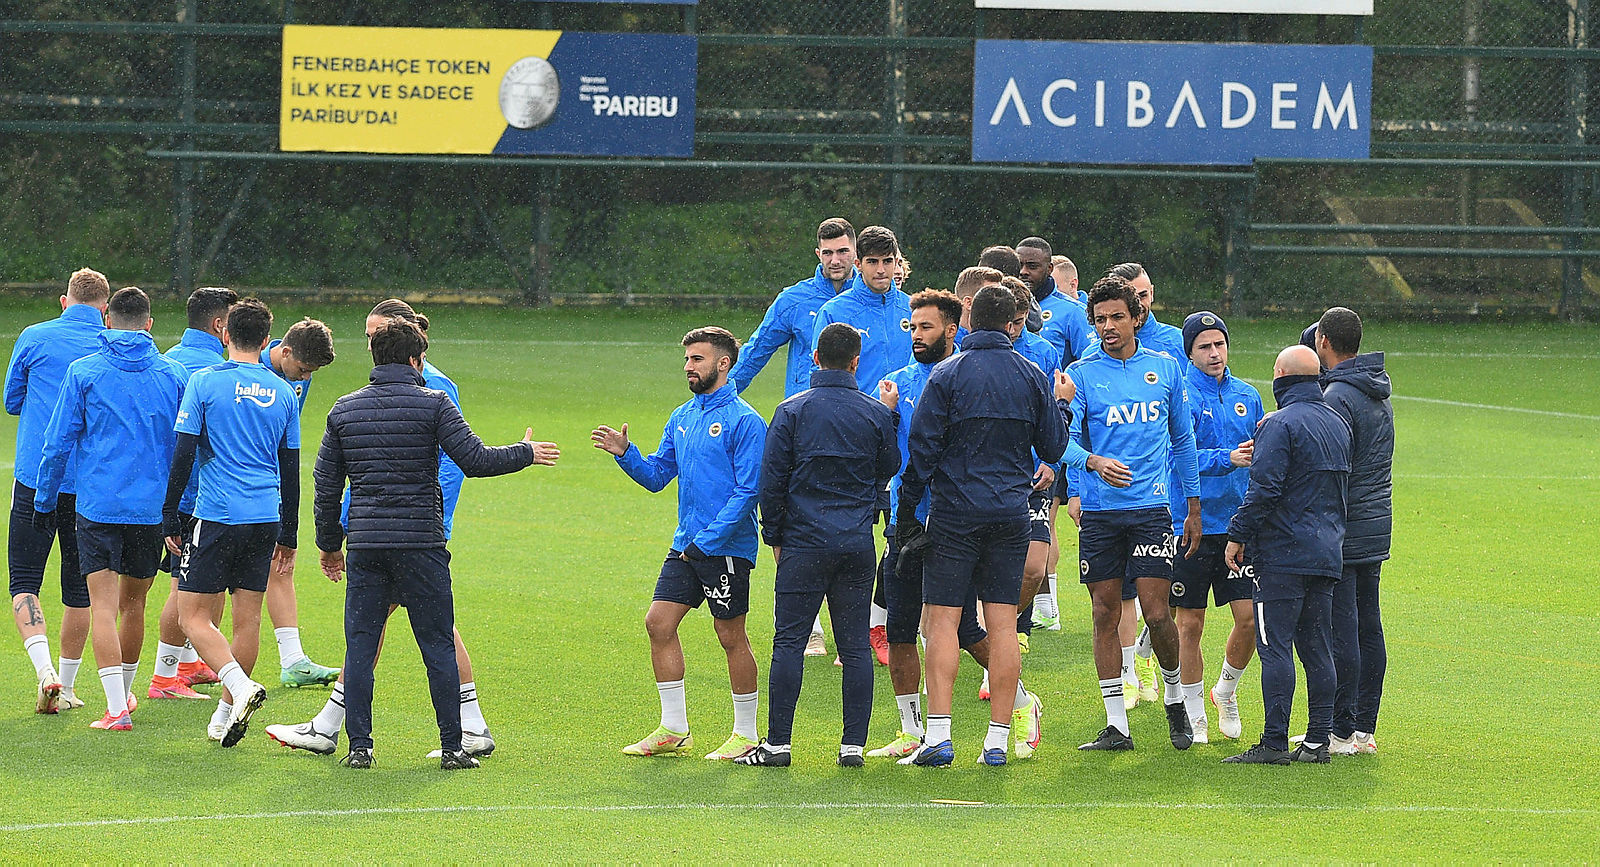 FENERBAHÇE HABERLERİ - Fenerbahçe’den çok konuşulacak transfer! Mesut Özil’in yerine Isco gelecek